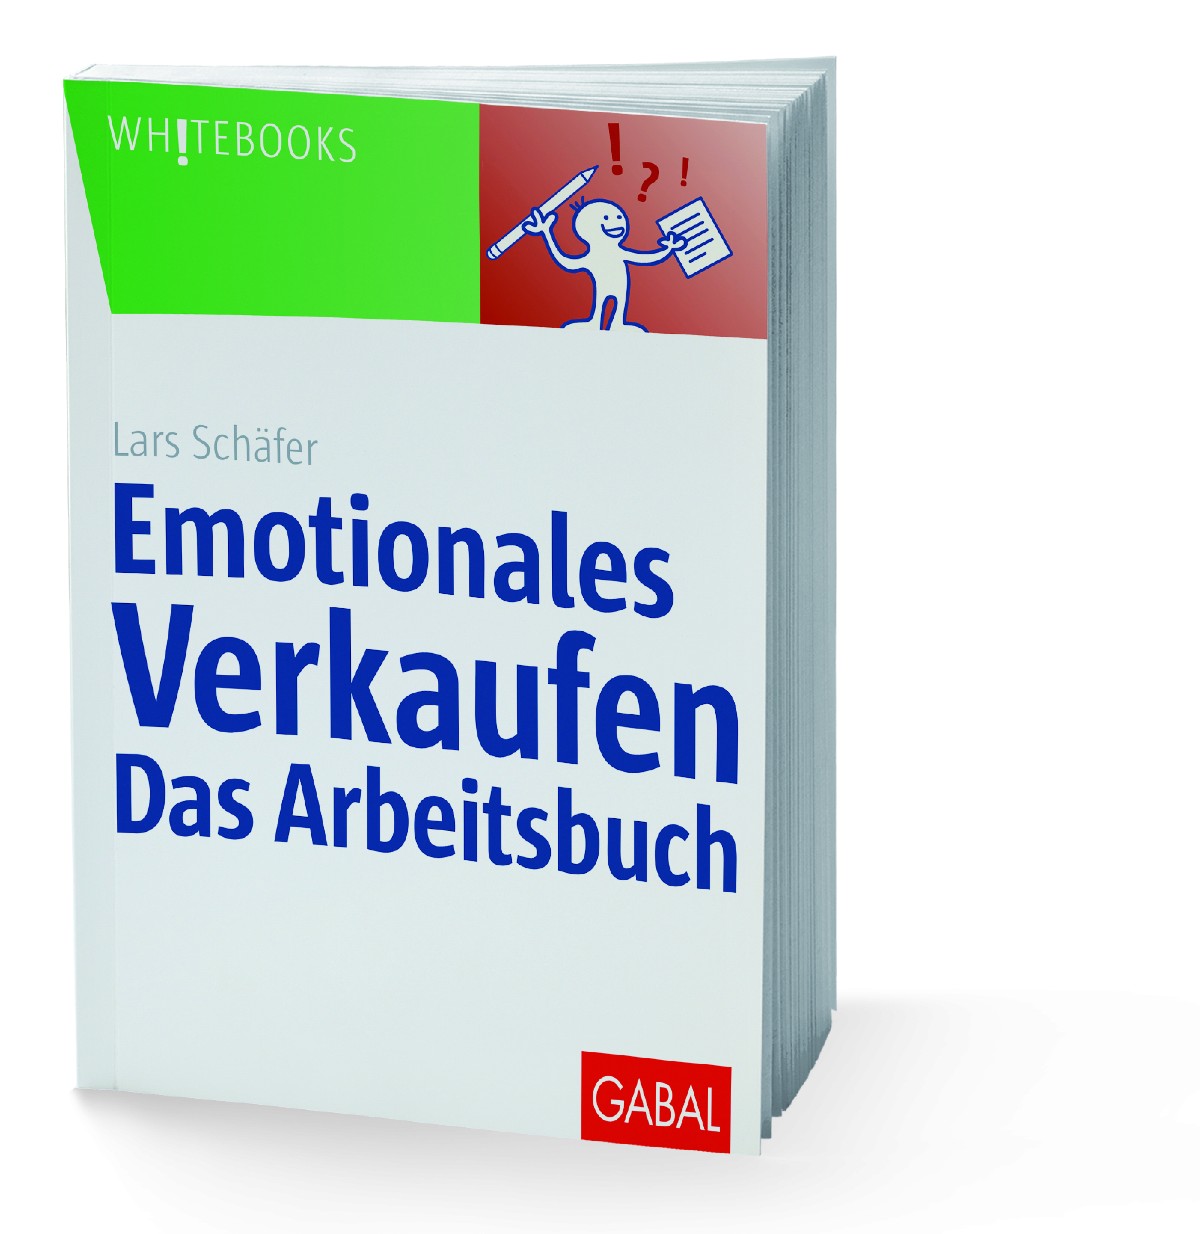 Emotionalles Verkaufen - das Arbeitsbuch